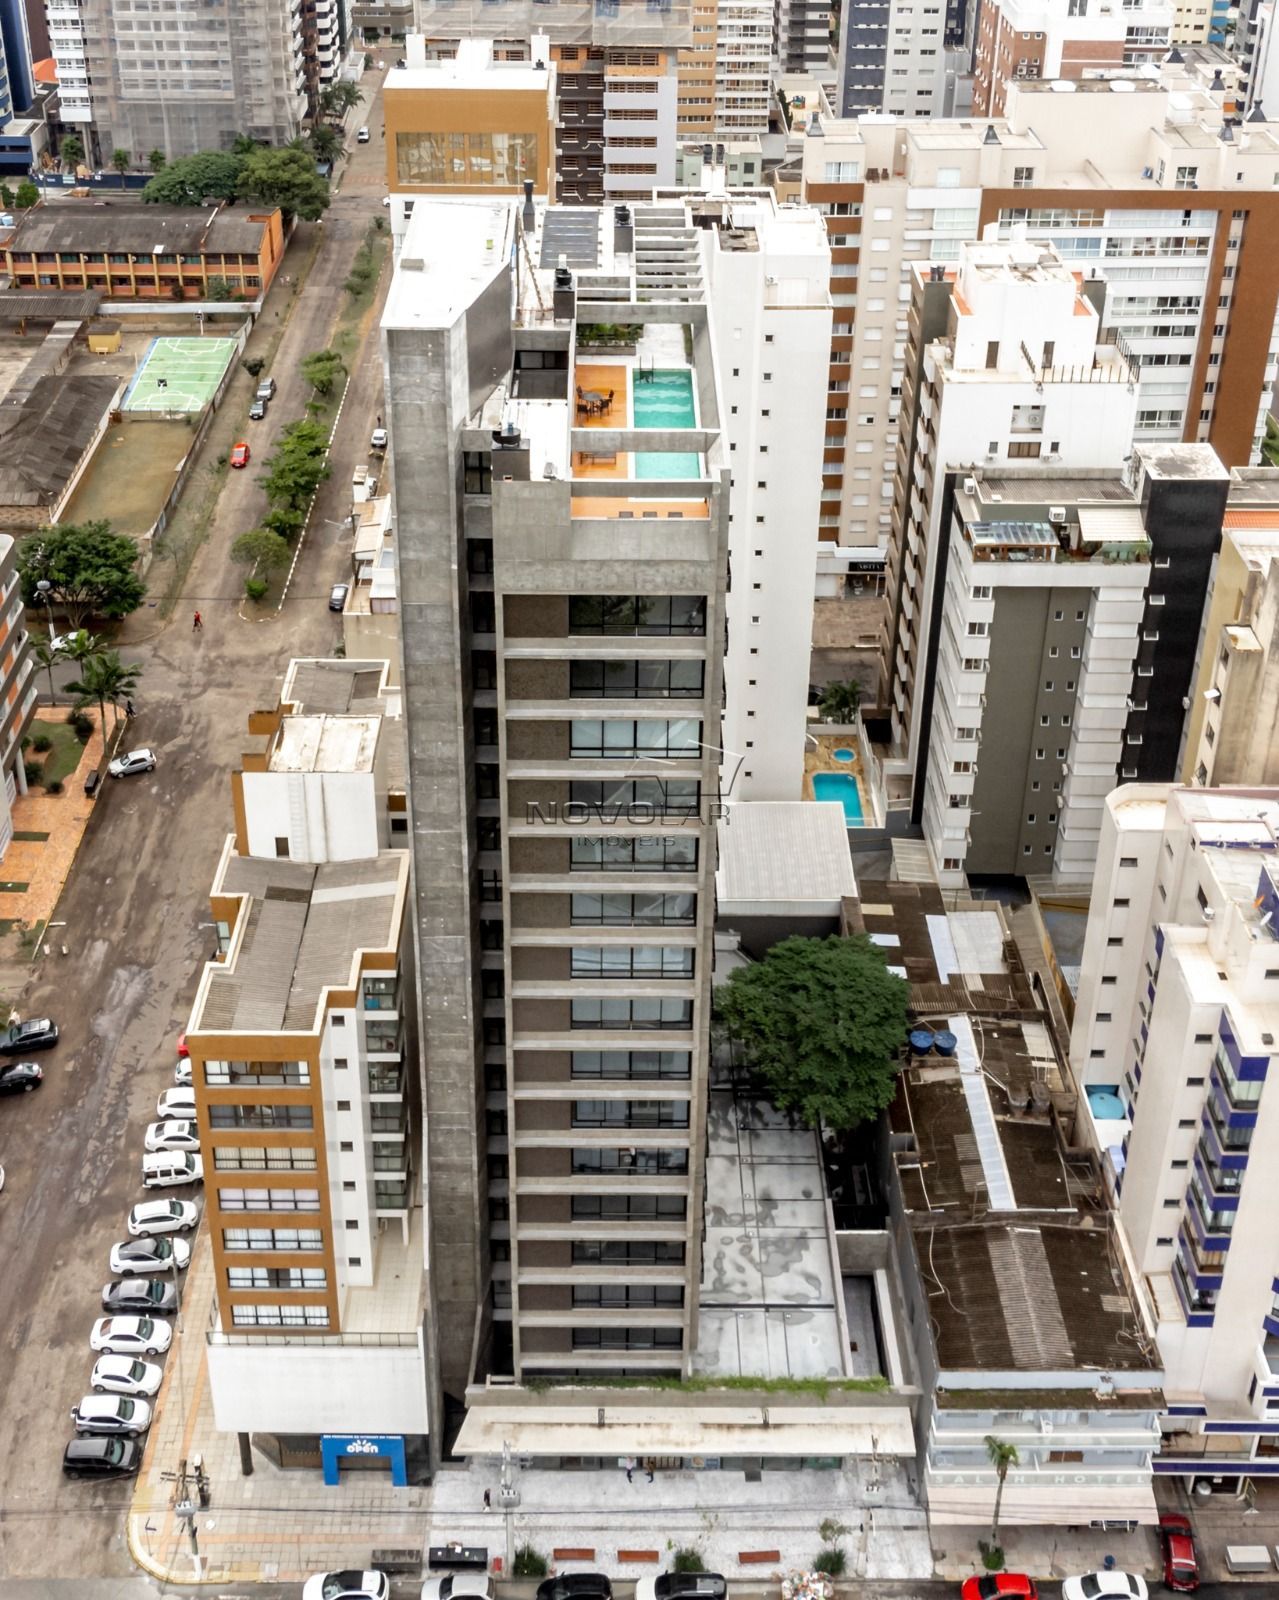 Apartamento com 2 dormitórios em Torres, no bairro Centro à venda